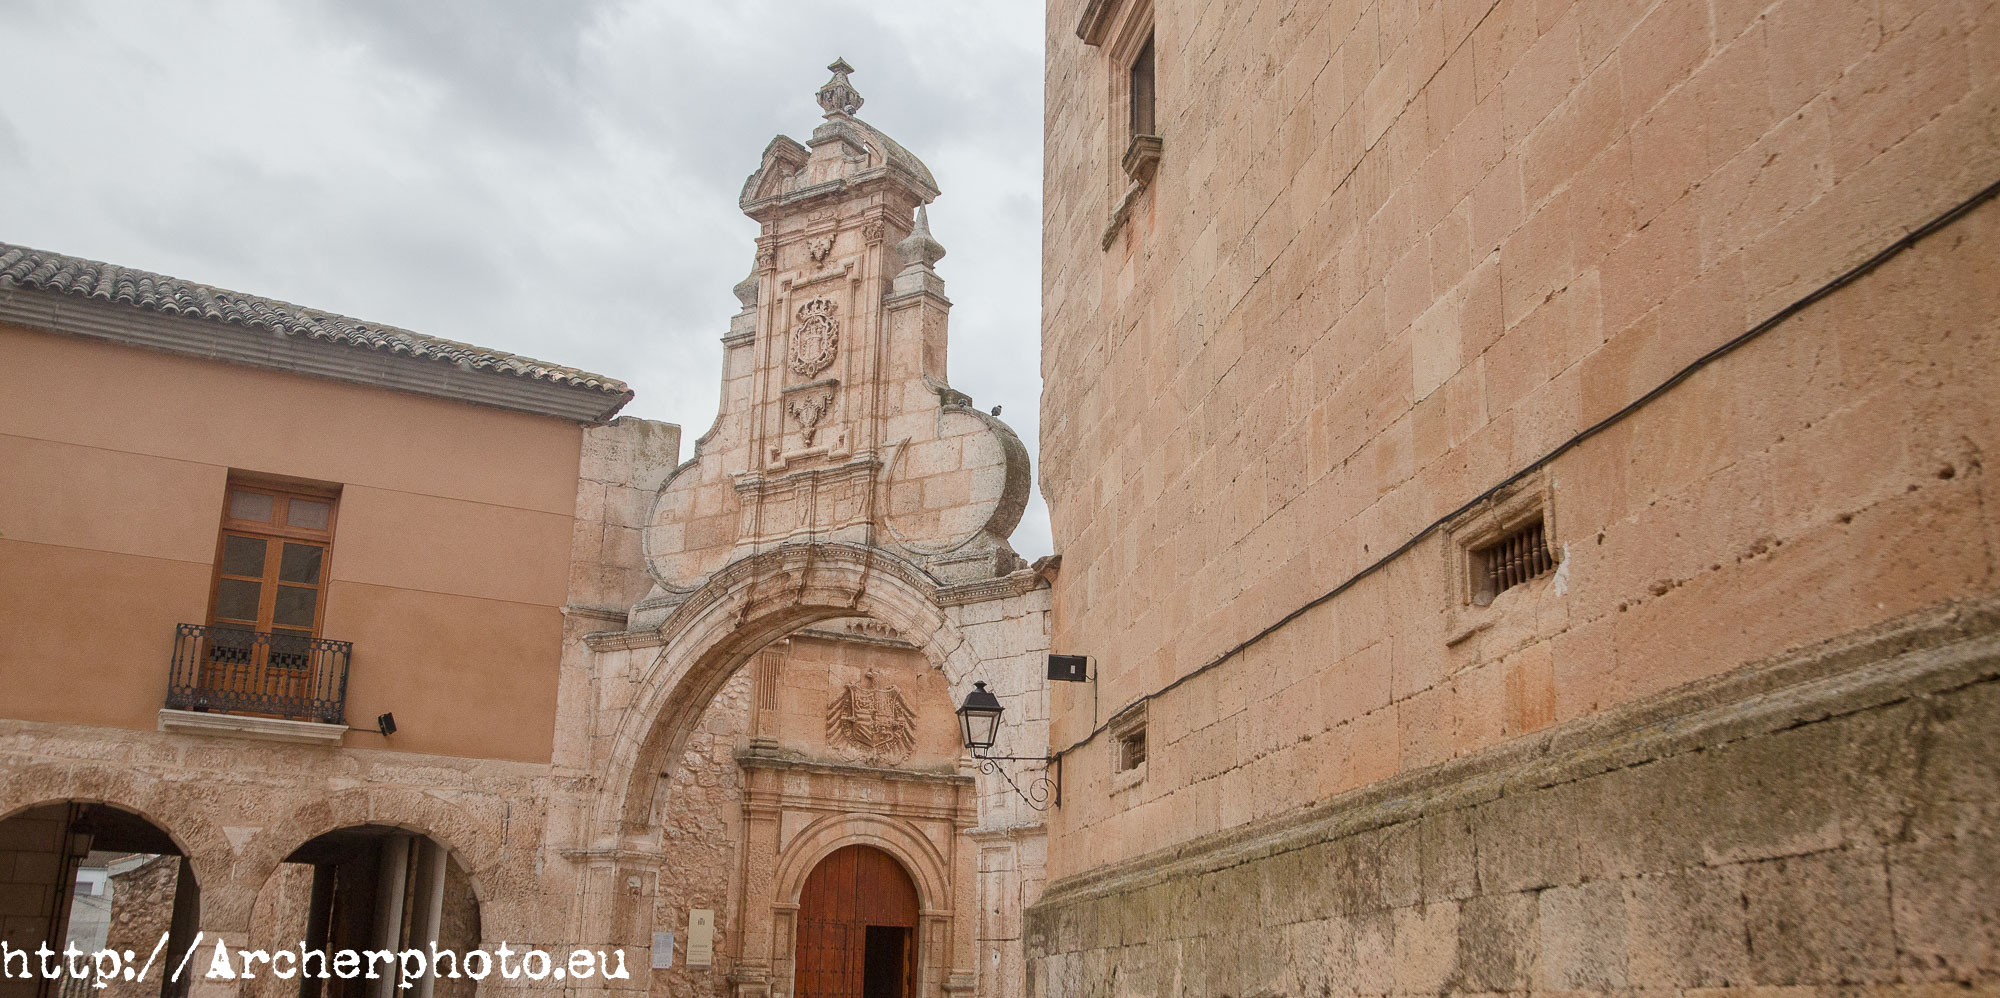 Arco barroco San Clemente, Cuenca por Sergi Albir, fotógrafo profesional